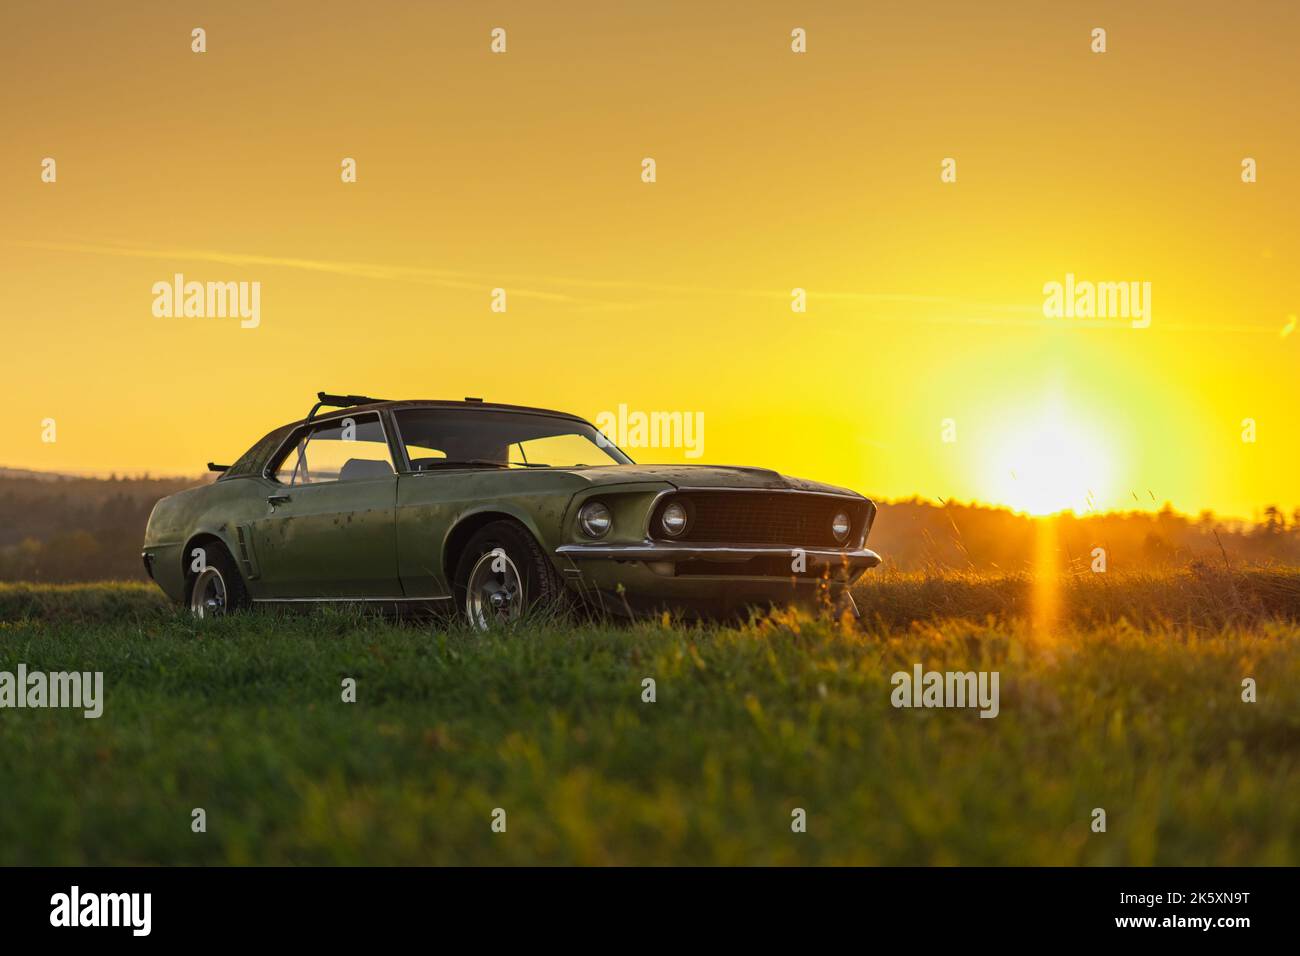 Old american Muscle Car in grüner Farbe, Foto in flachem Profil und am Abend Sonnenuntergang mit Sonne nahe am Horizont aufgenommen. Romantisches Oldtimer Auto Foto. Stockfoto